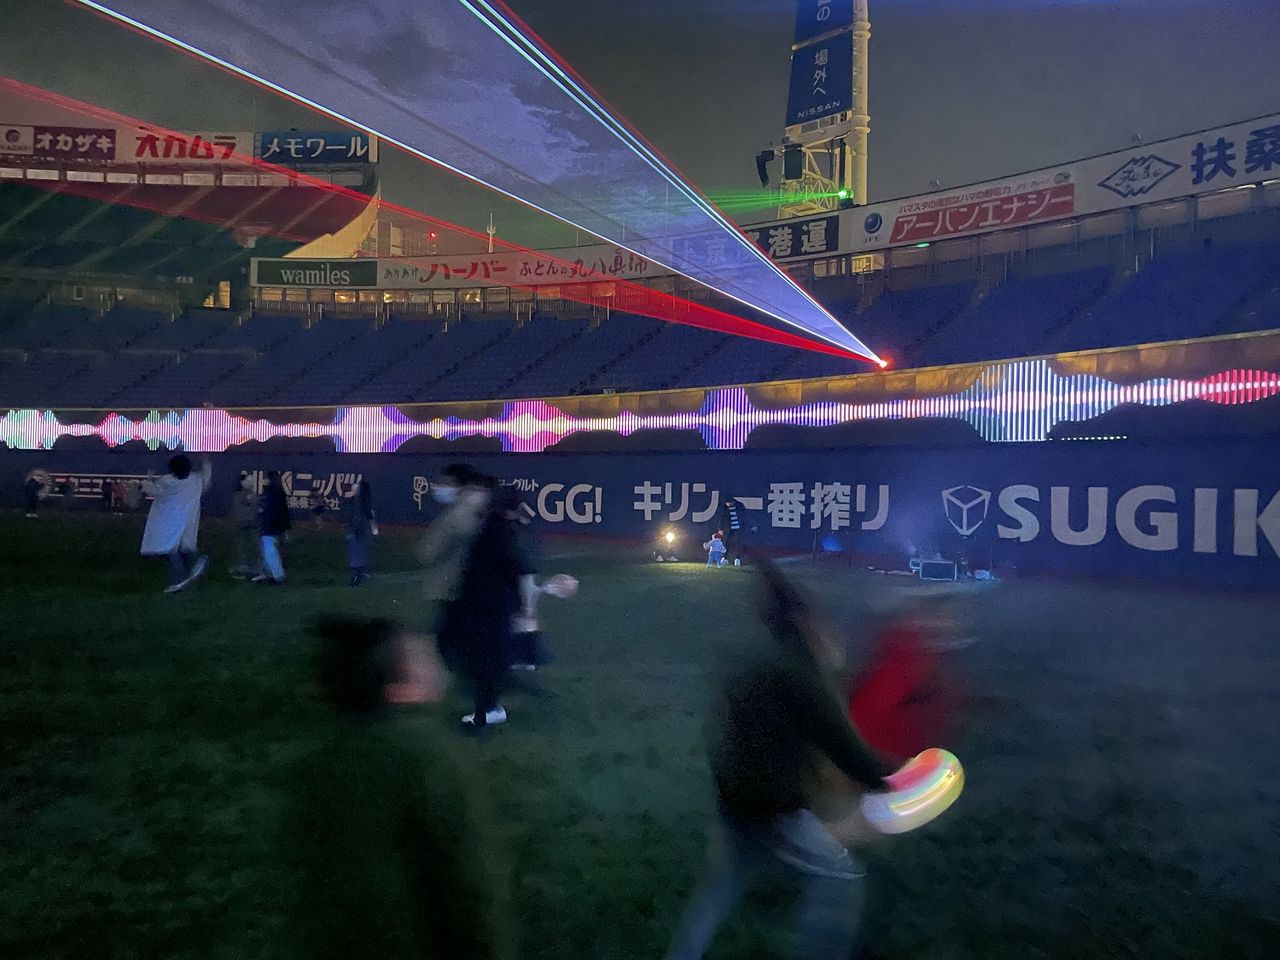 横浜スタジアム各所に色とりどりのレーザーが縦横無尽に展開され、幻想的な光の空間が出現。